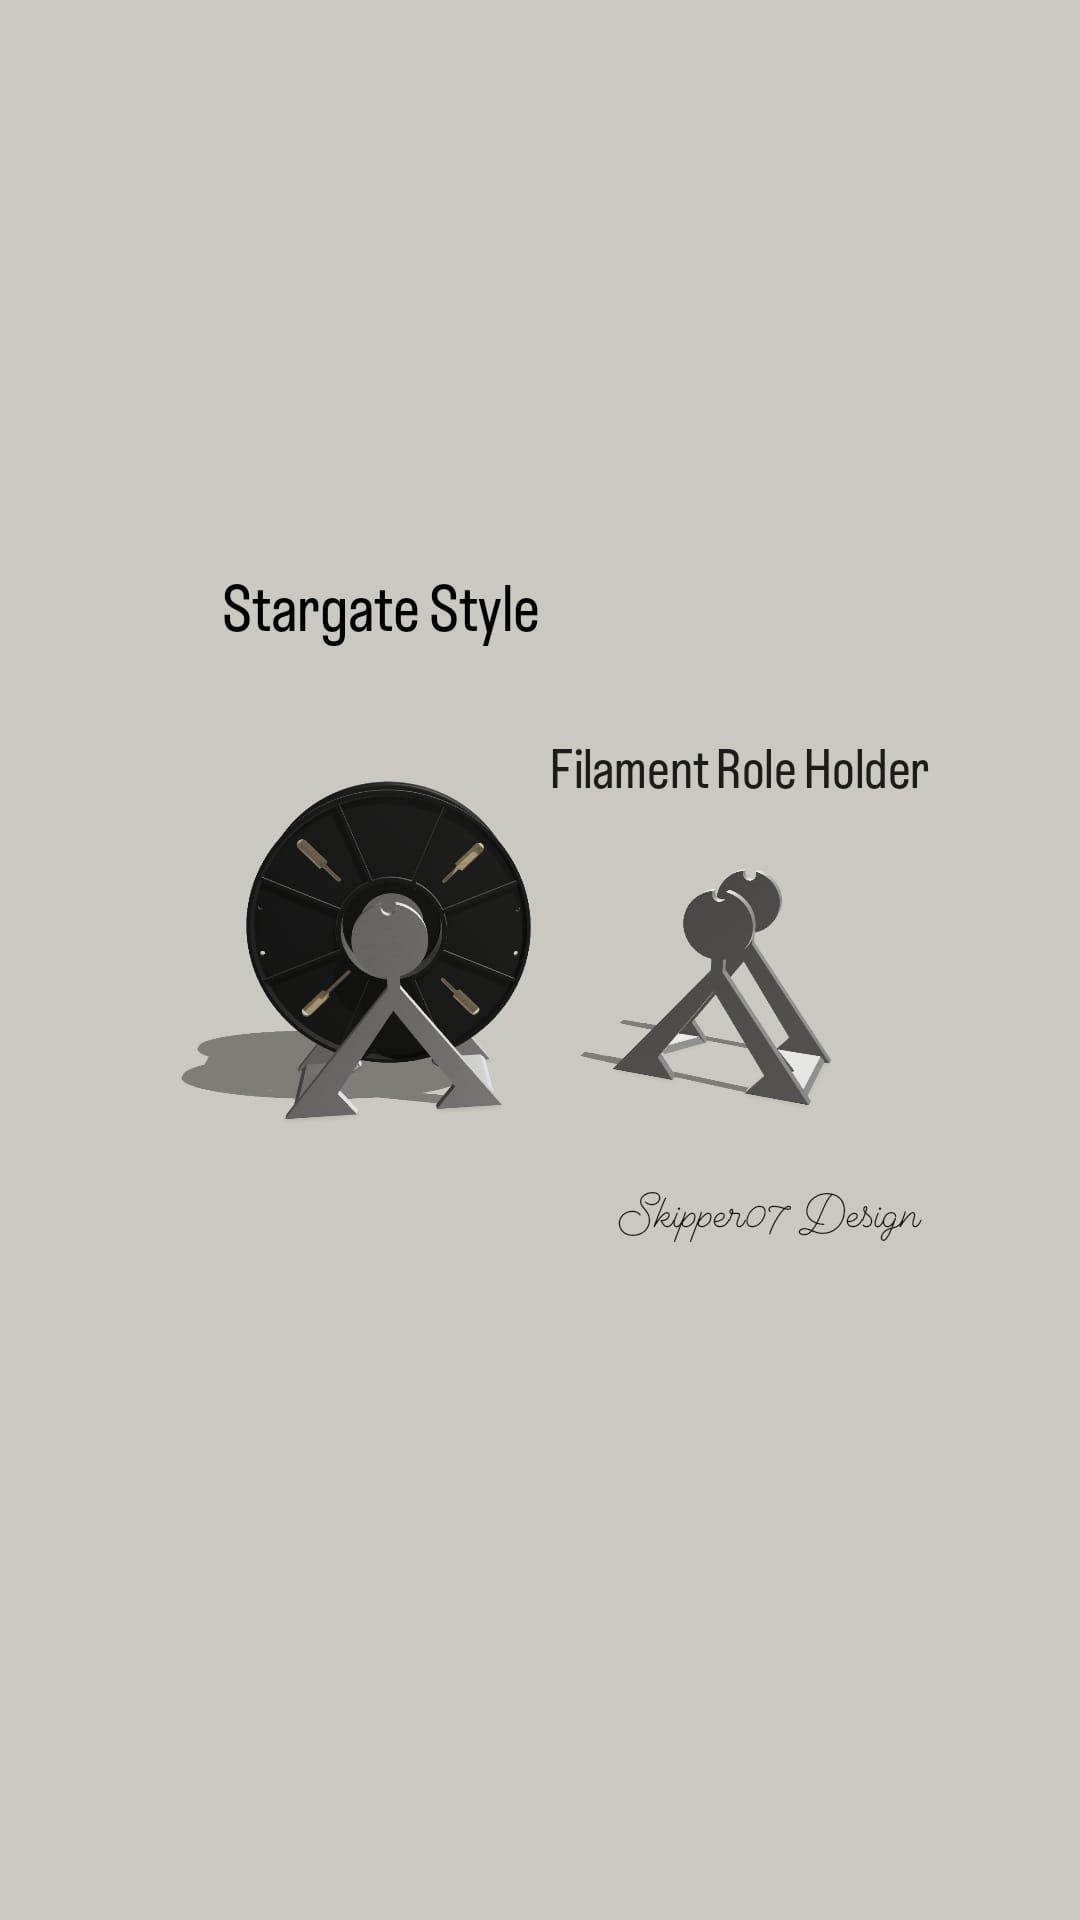 Filament Role Holder Stargate Style.stl 3d model